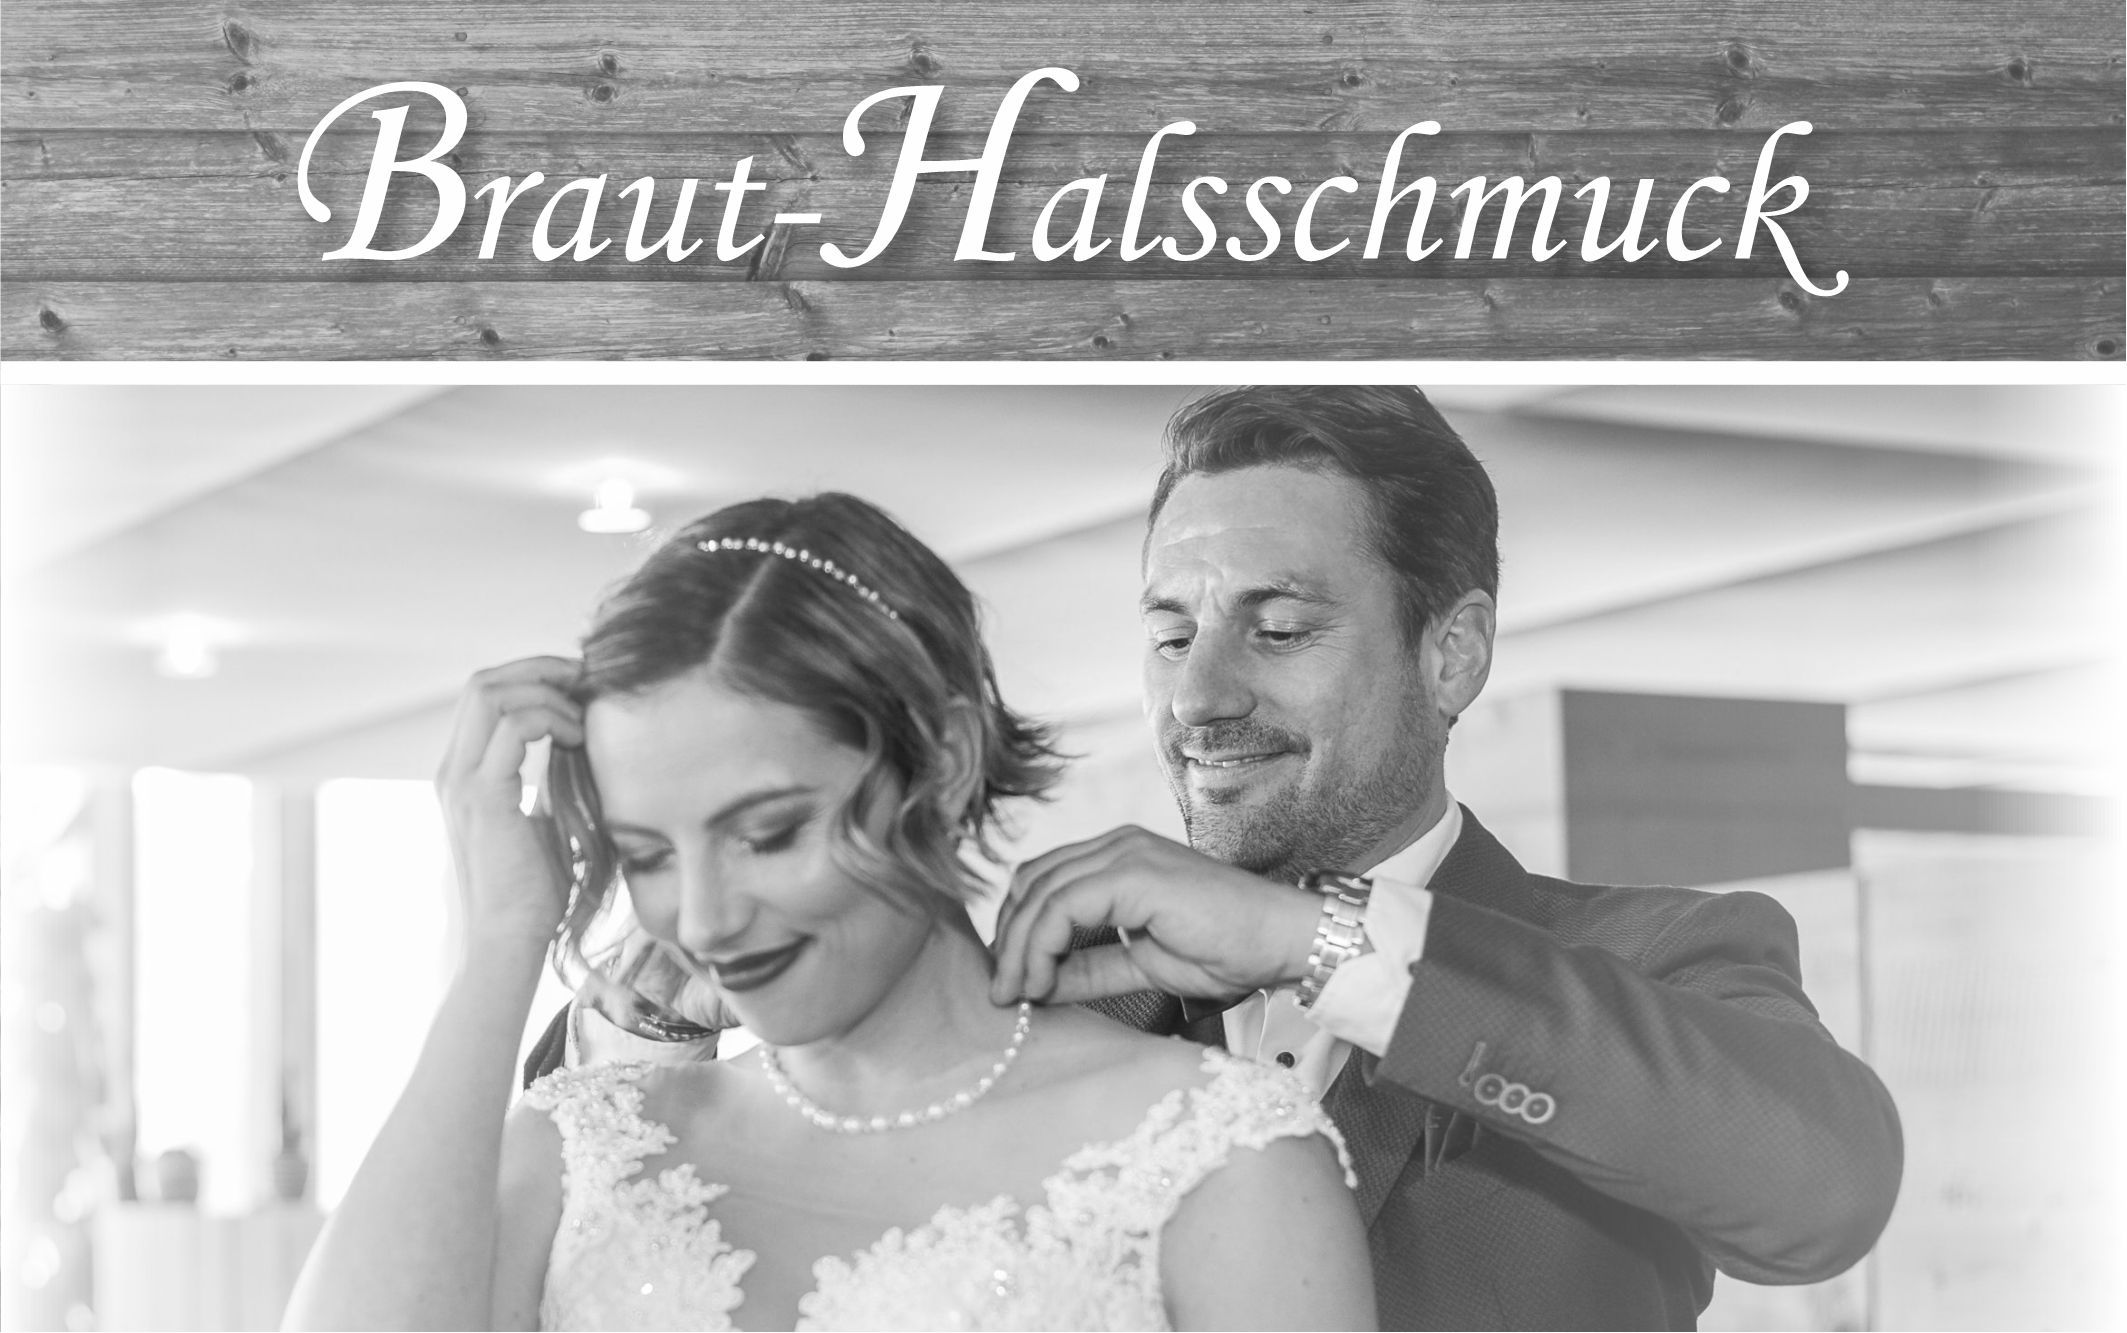 Braut-Halsschmuck-Brautschmuck-Perlenketten-Hochzeitsketten-Swarovskiperlen-klassischer-Brautschmuck-günstig-preiswert-individuell-handgefertigt-personalisiert-Geschenk-Brautgeschenk-Hochzeitsschmuck-Hochzeit